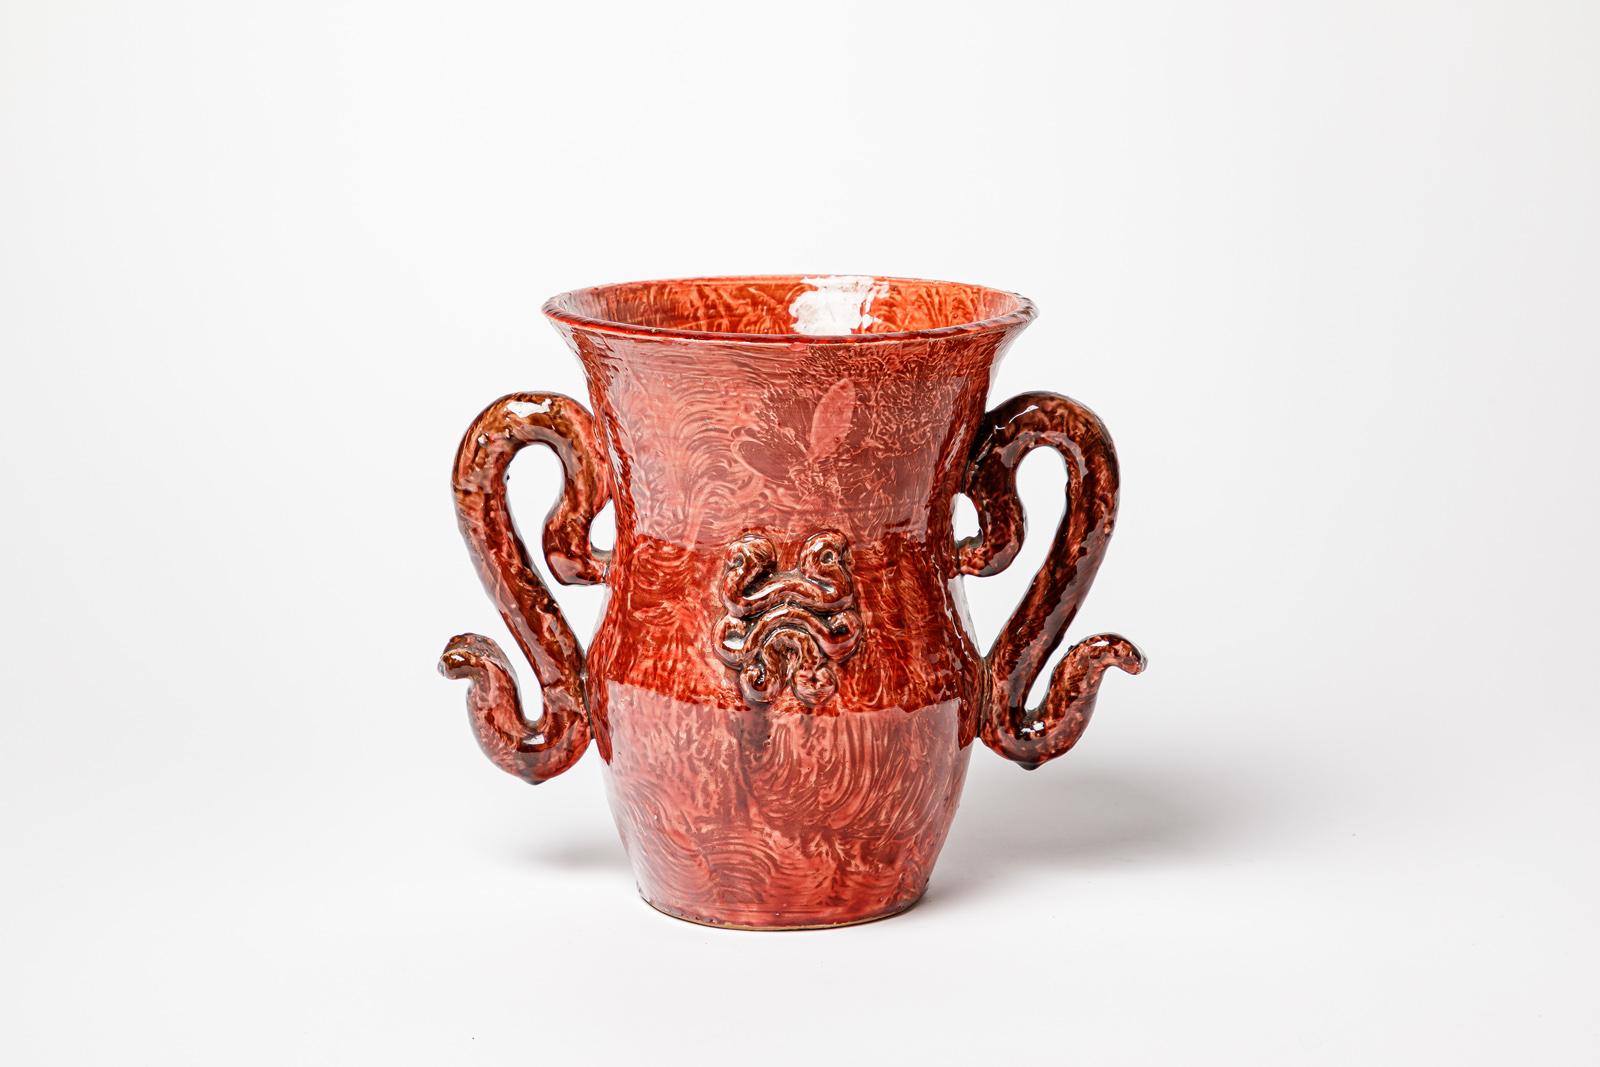 Jean Austruy

Große Keramikvase im Art-Deco-Stil

Rote keramische Glasurfarbe

Original perfekter Zustand

Unterzeichnet

Höhe 21 cm
Groß 26 cm